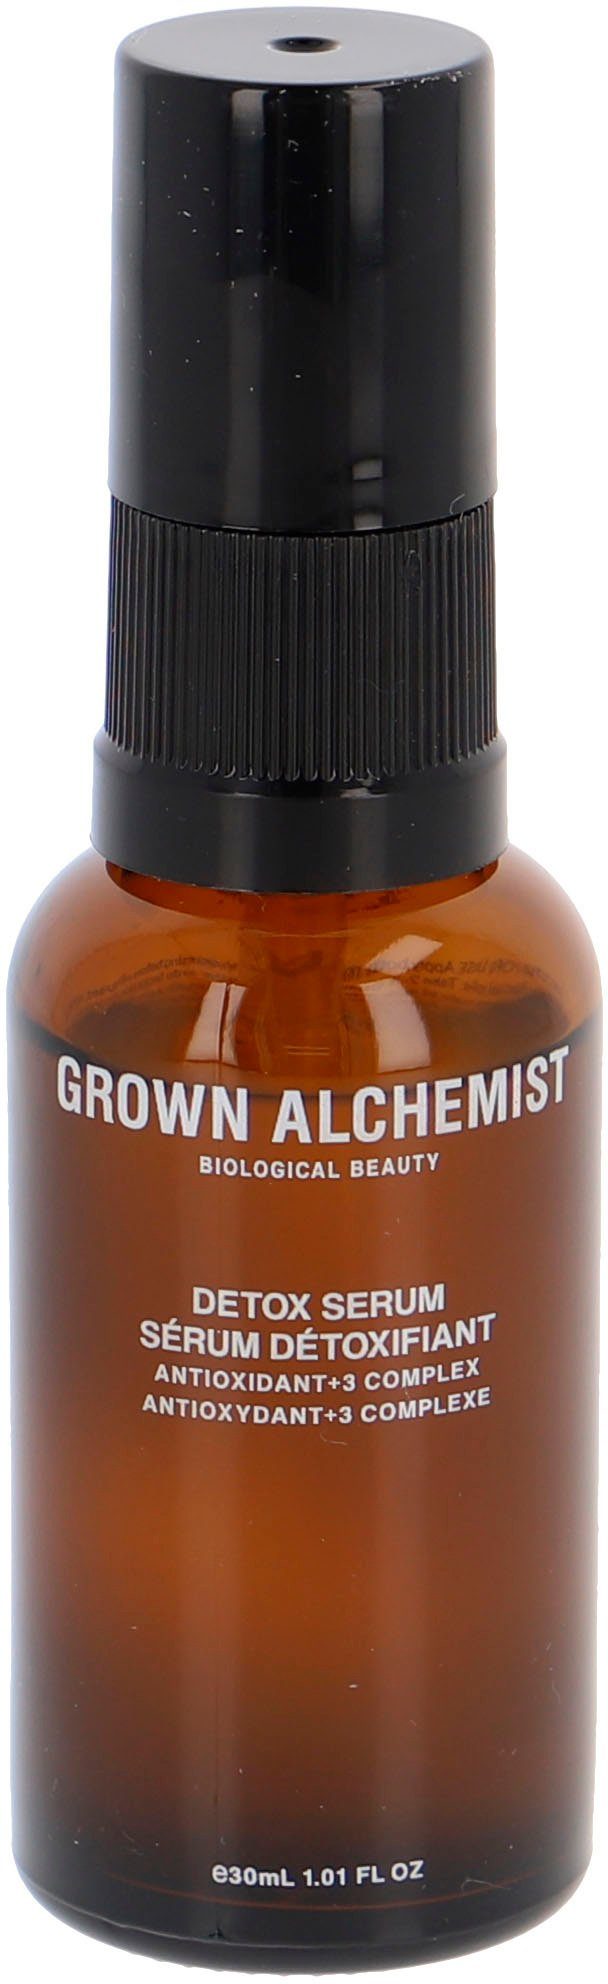 Sofort lieferbar GROWN ALCHEMIST Serum Detox Gesichtsserum 3 Complex Antioxidant